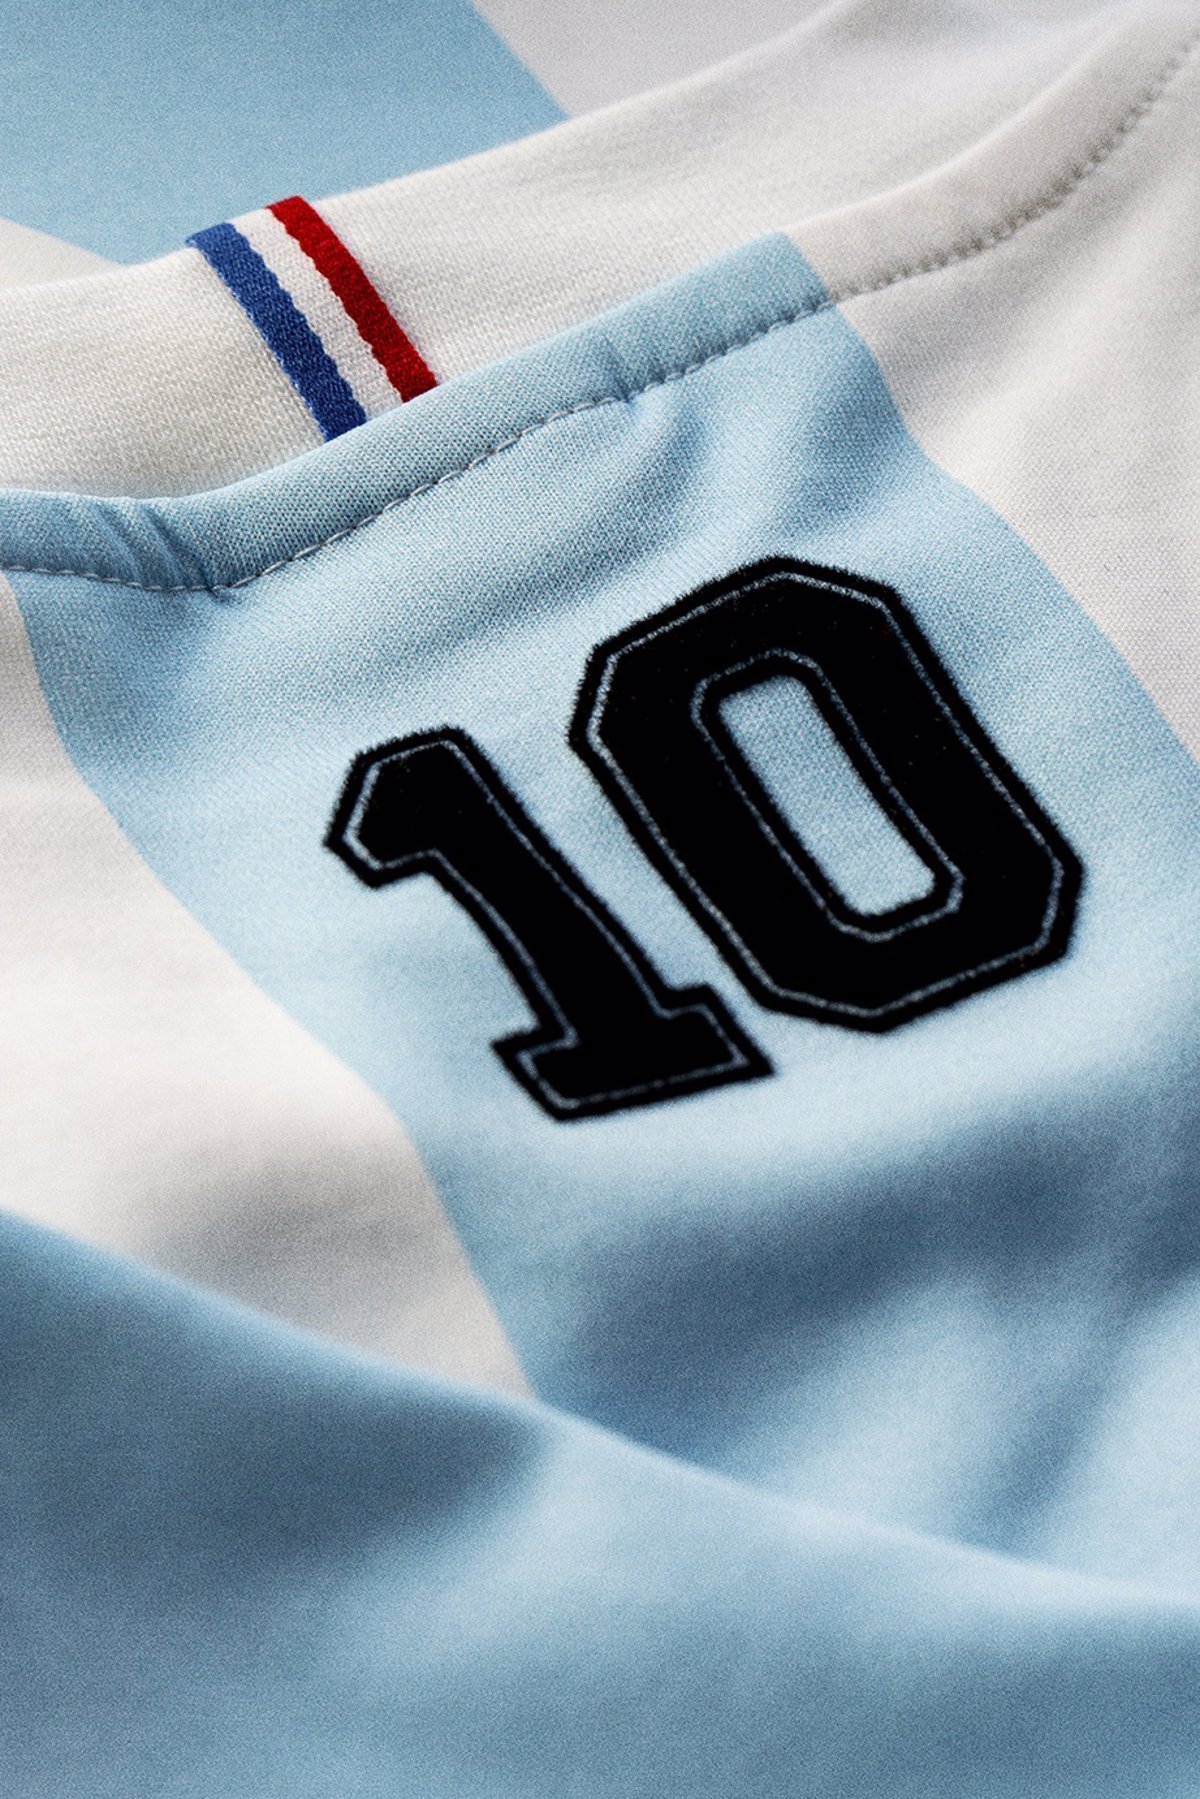 Le Coq Sportif inaugura su colección Legends una camiseta el Mundial 86